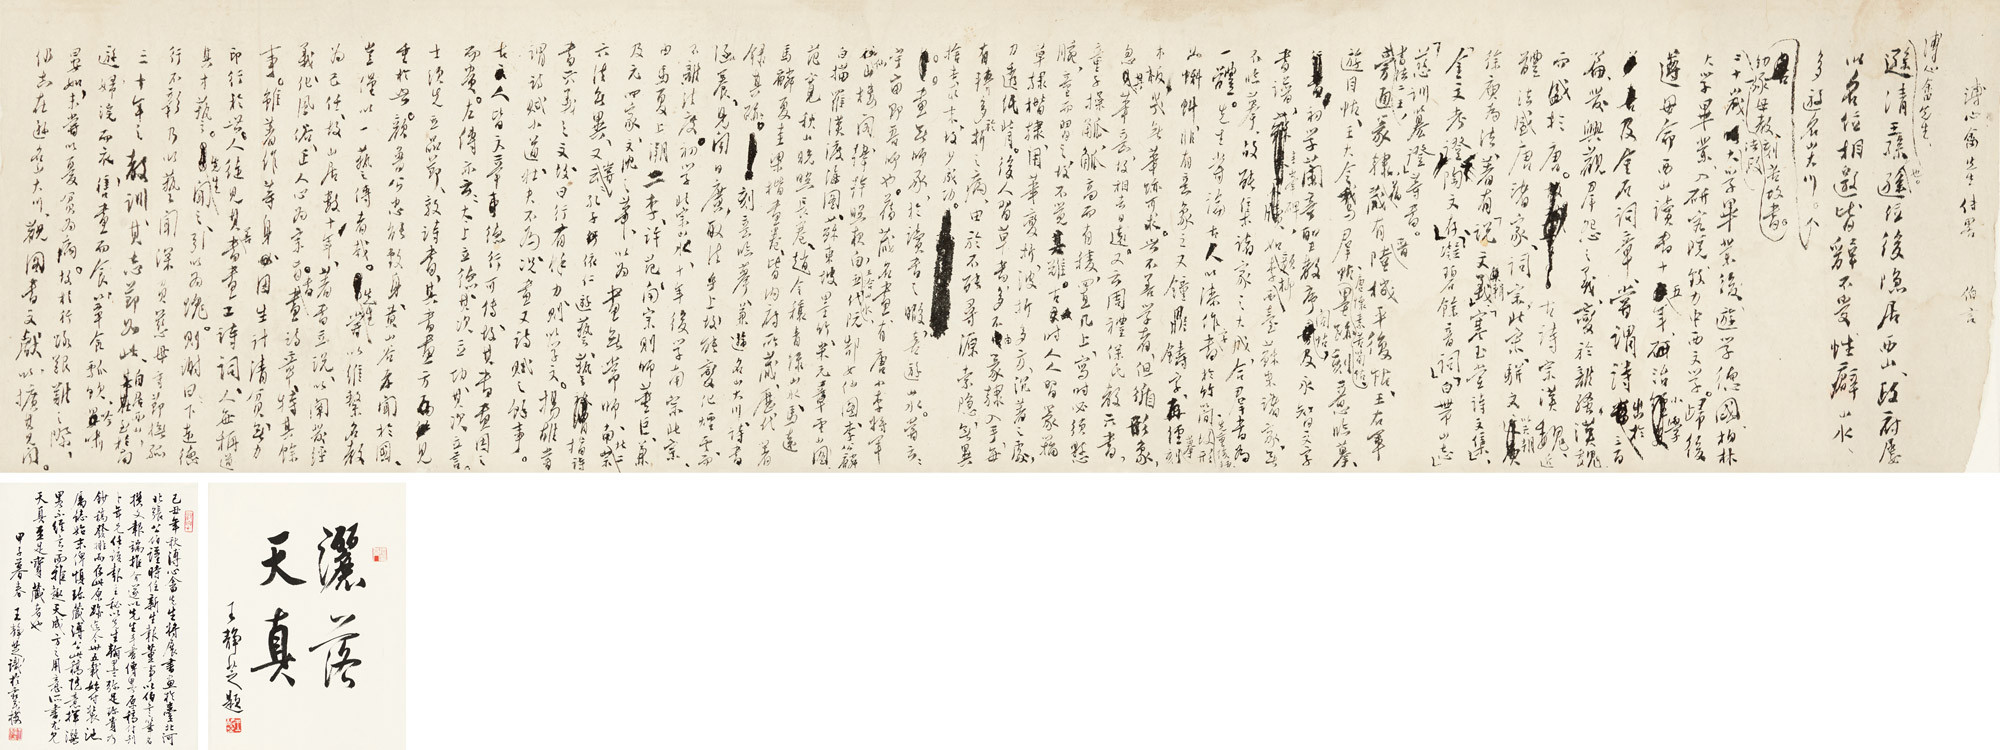 Calligraphy In Running Script